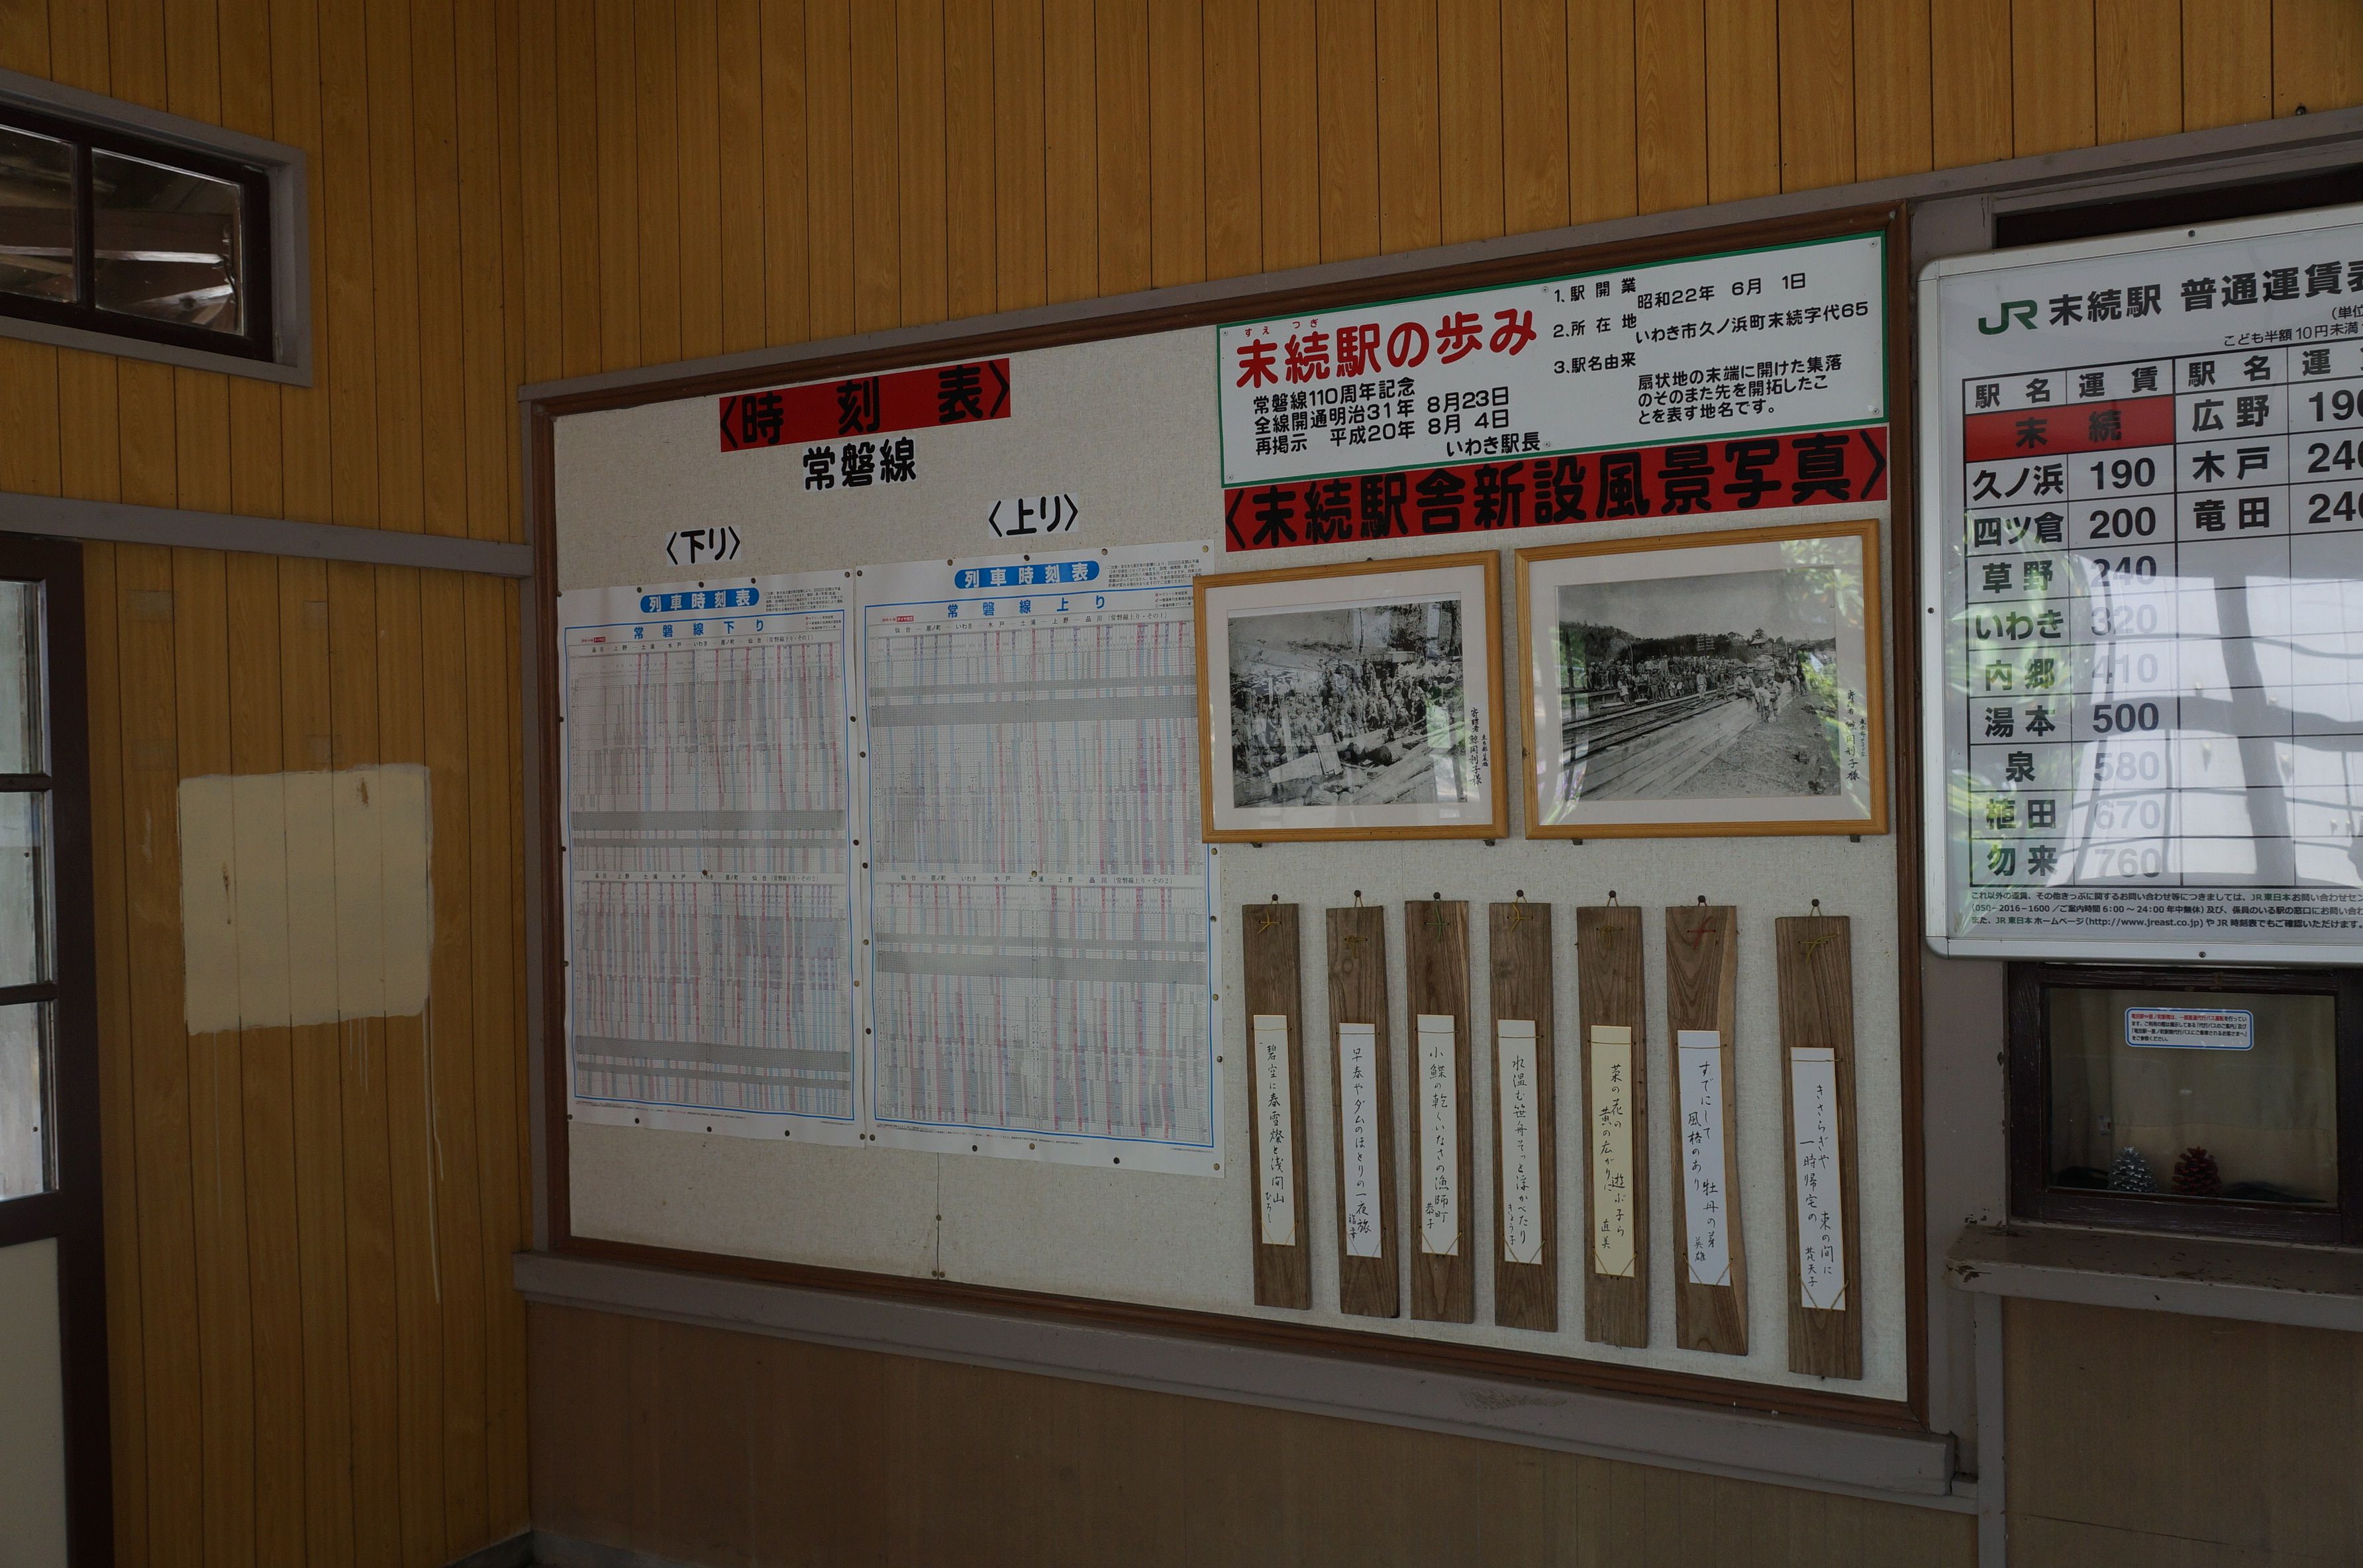 末続駅の歴史を綴った掲示板(平成28年5月、いわきジャーナル撮影)